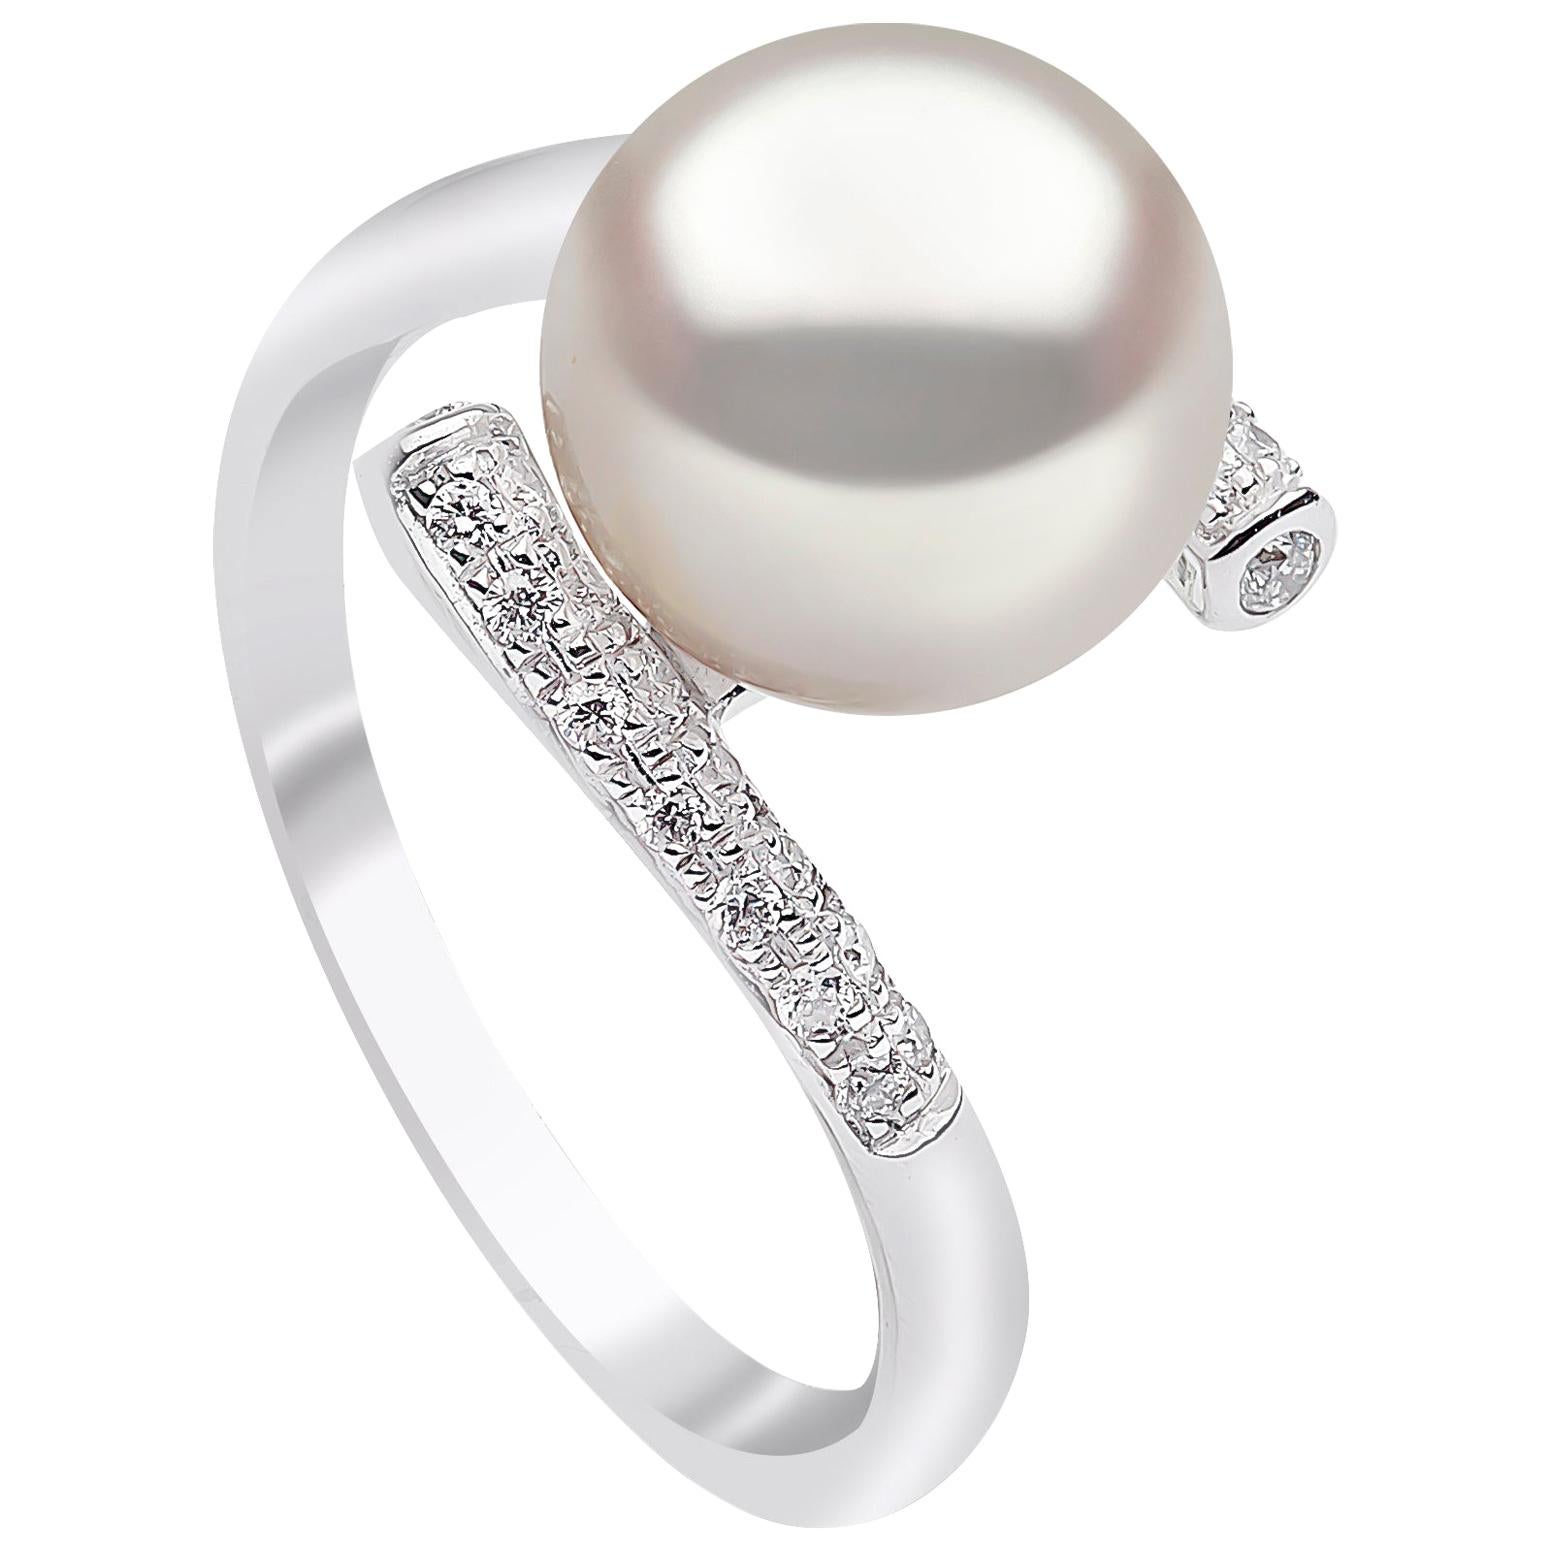 Yoko London Freshwater Pearl and Diamond Ring in 18 Karat White Gold